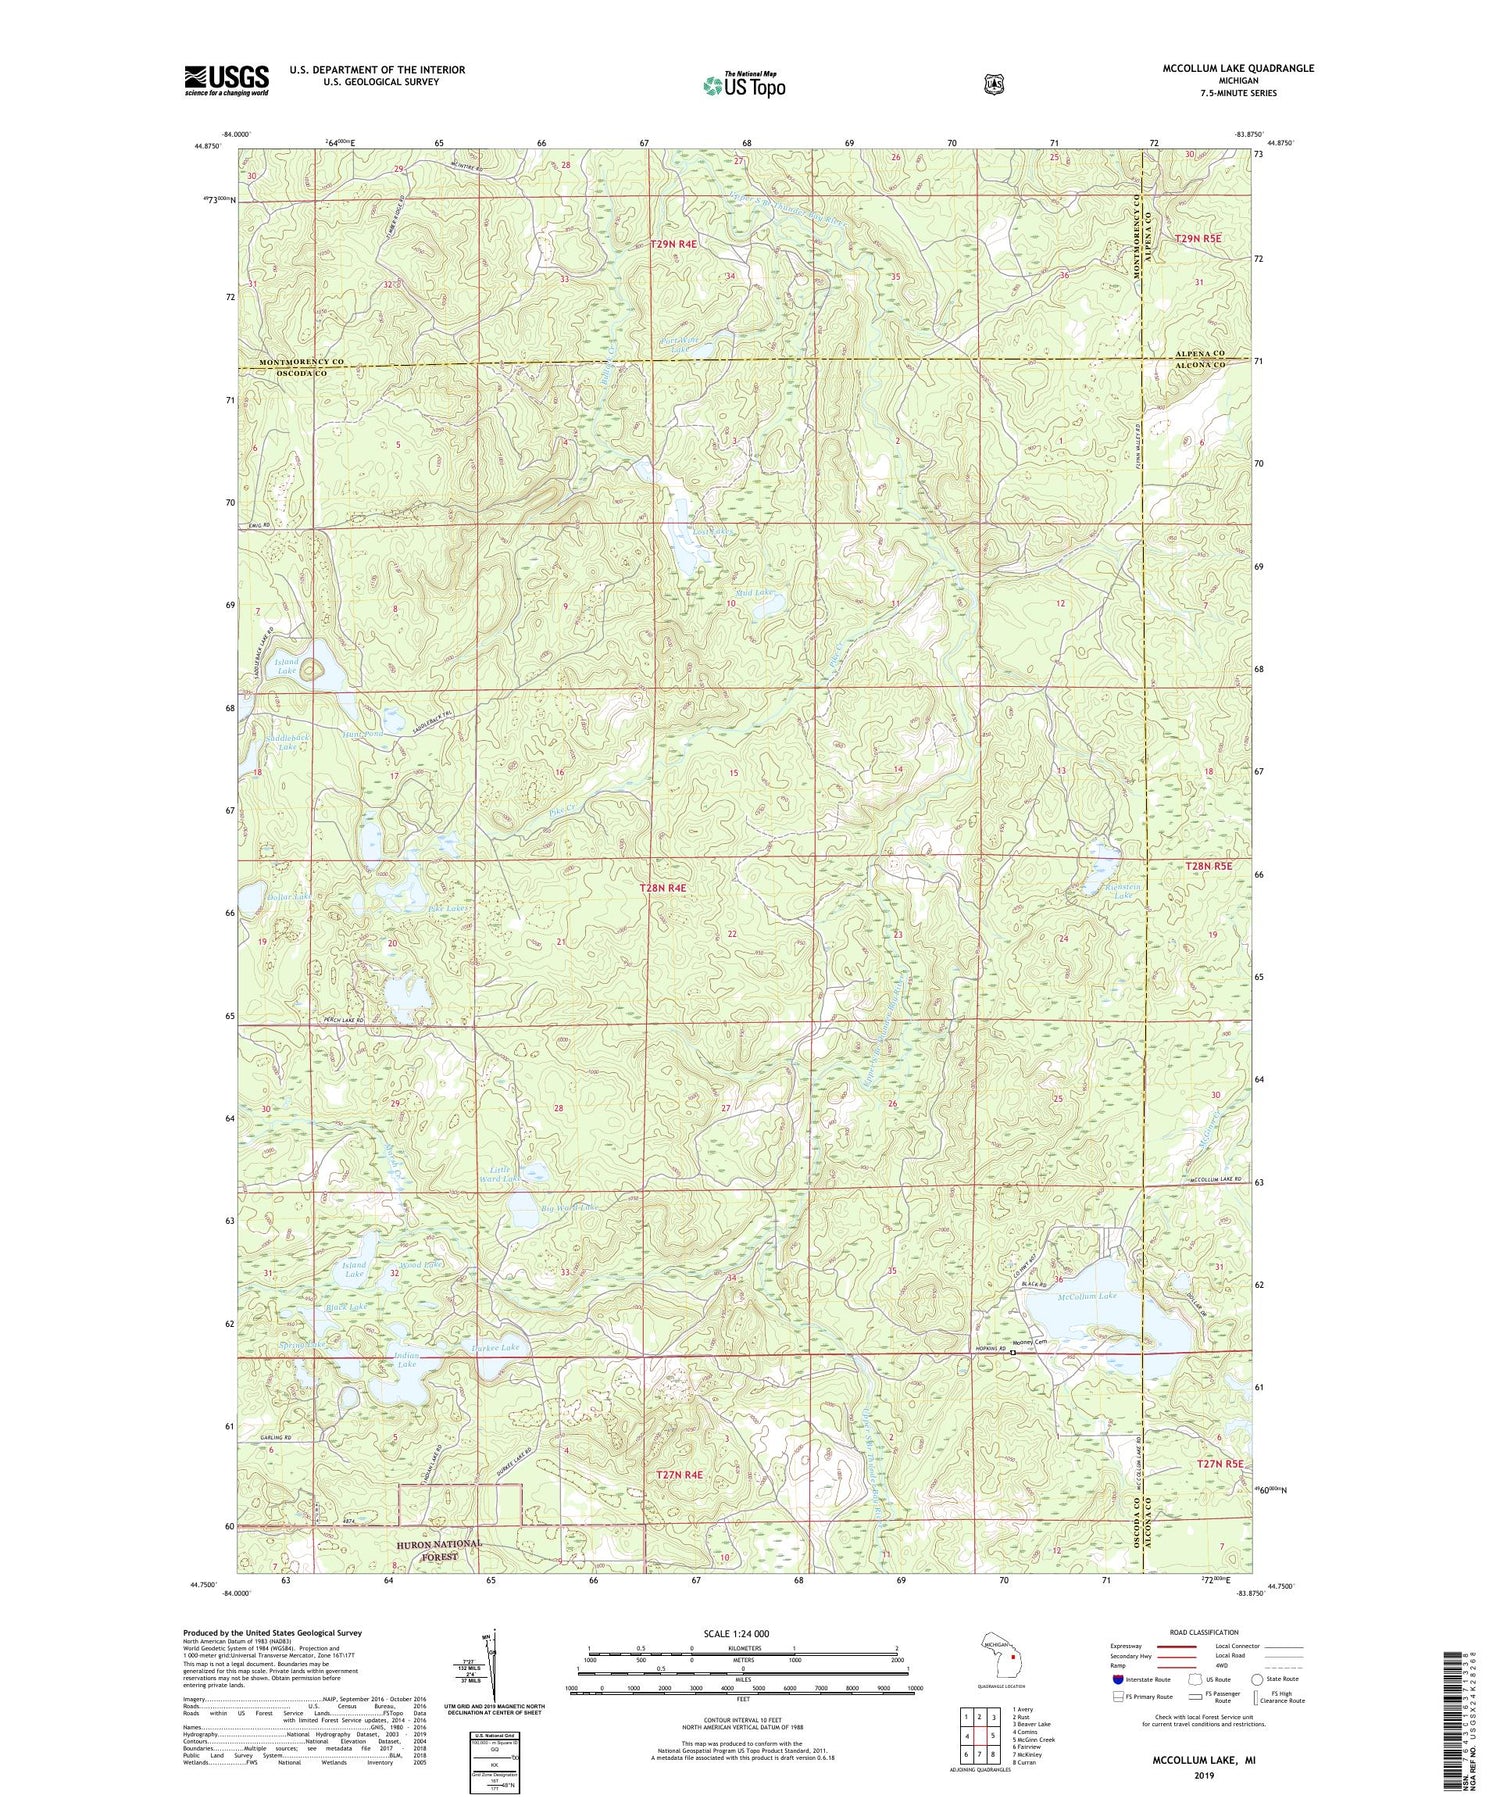 McCollum Lake Michigan US Topo Map Image